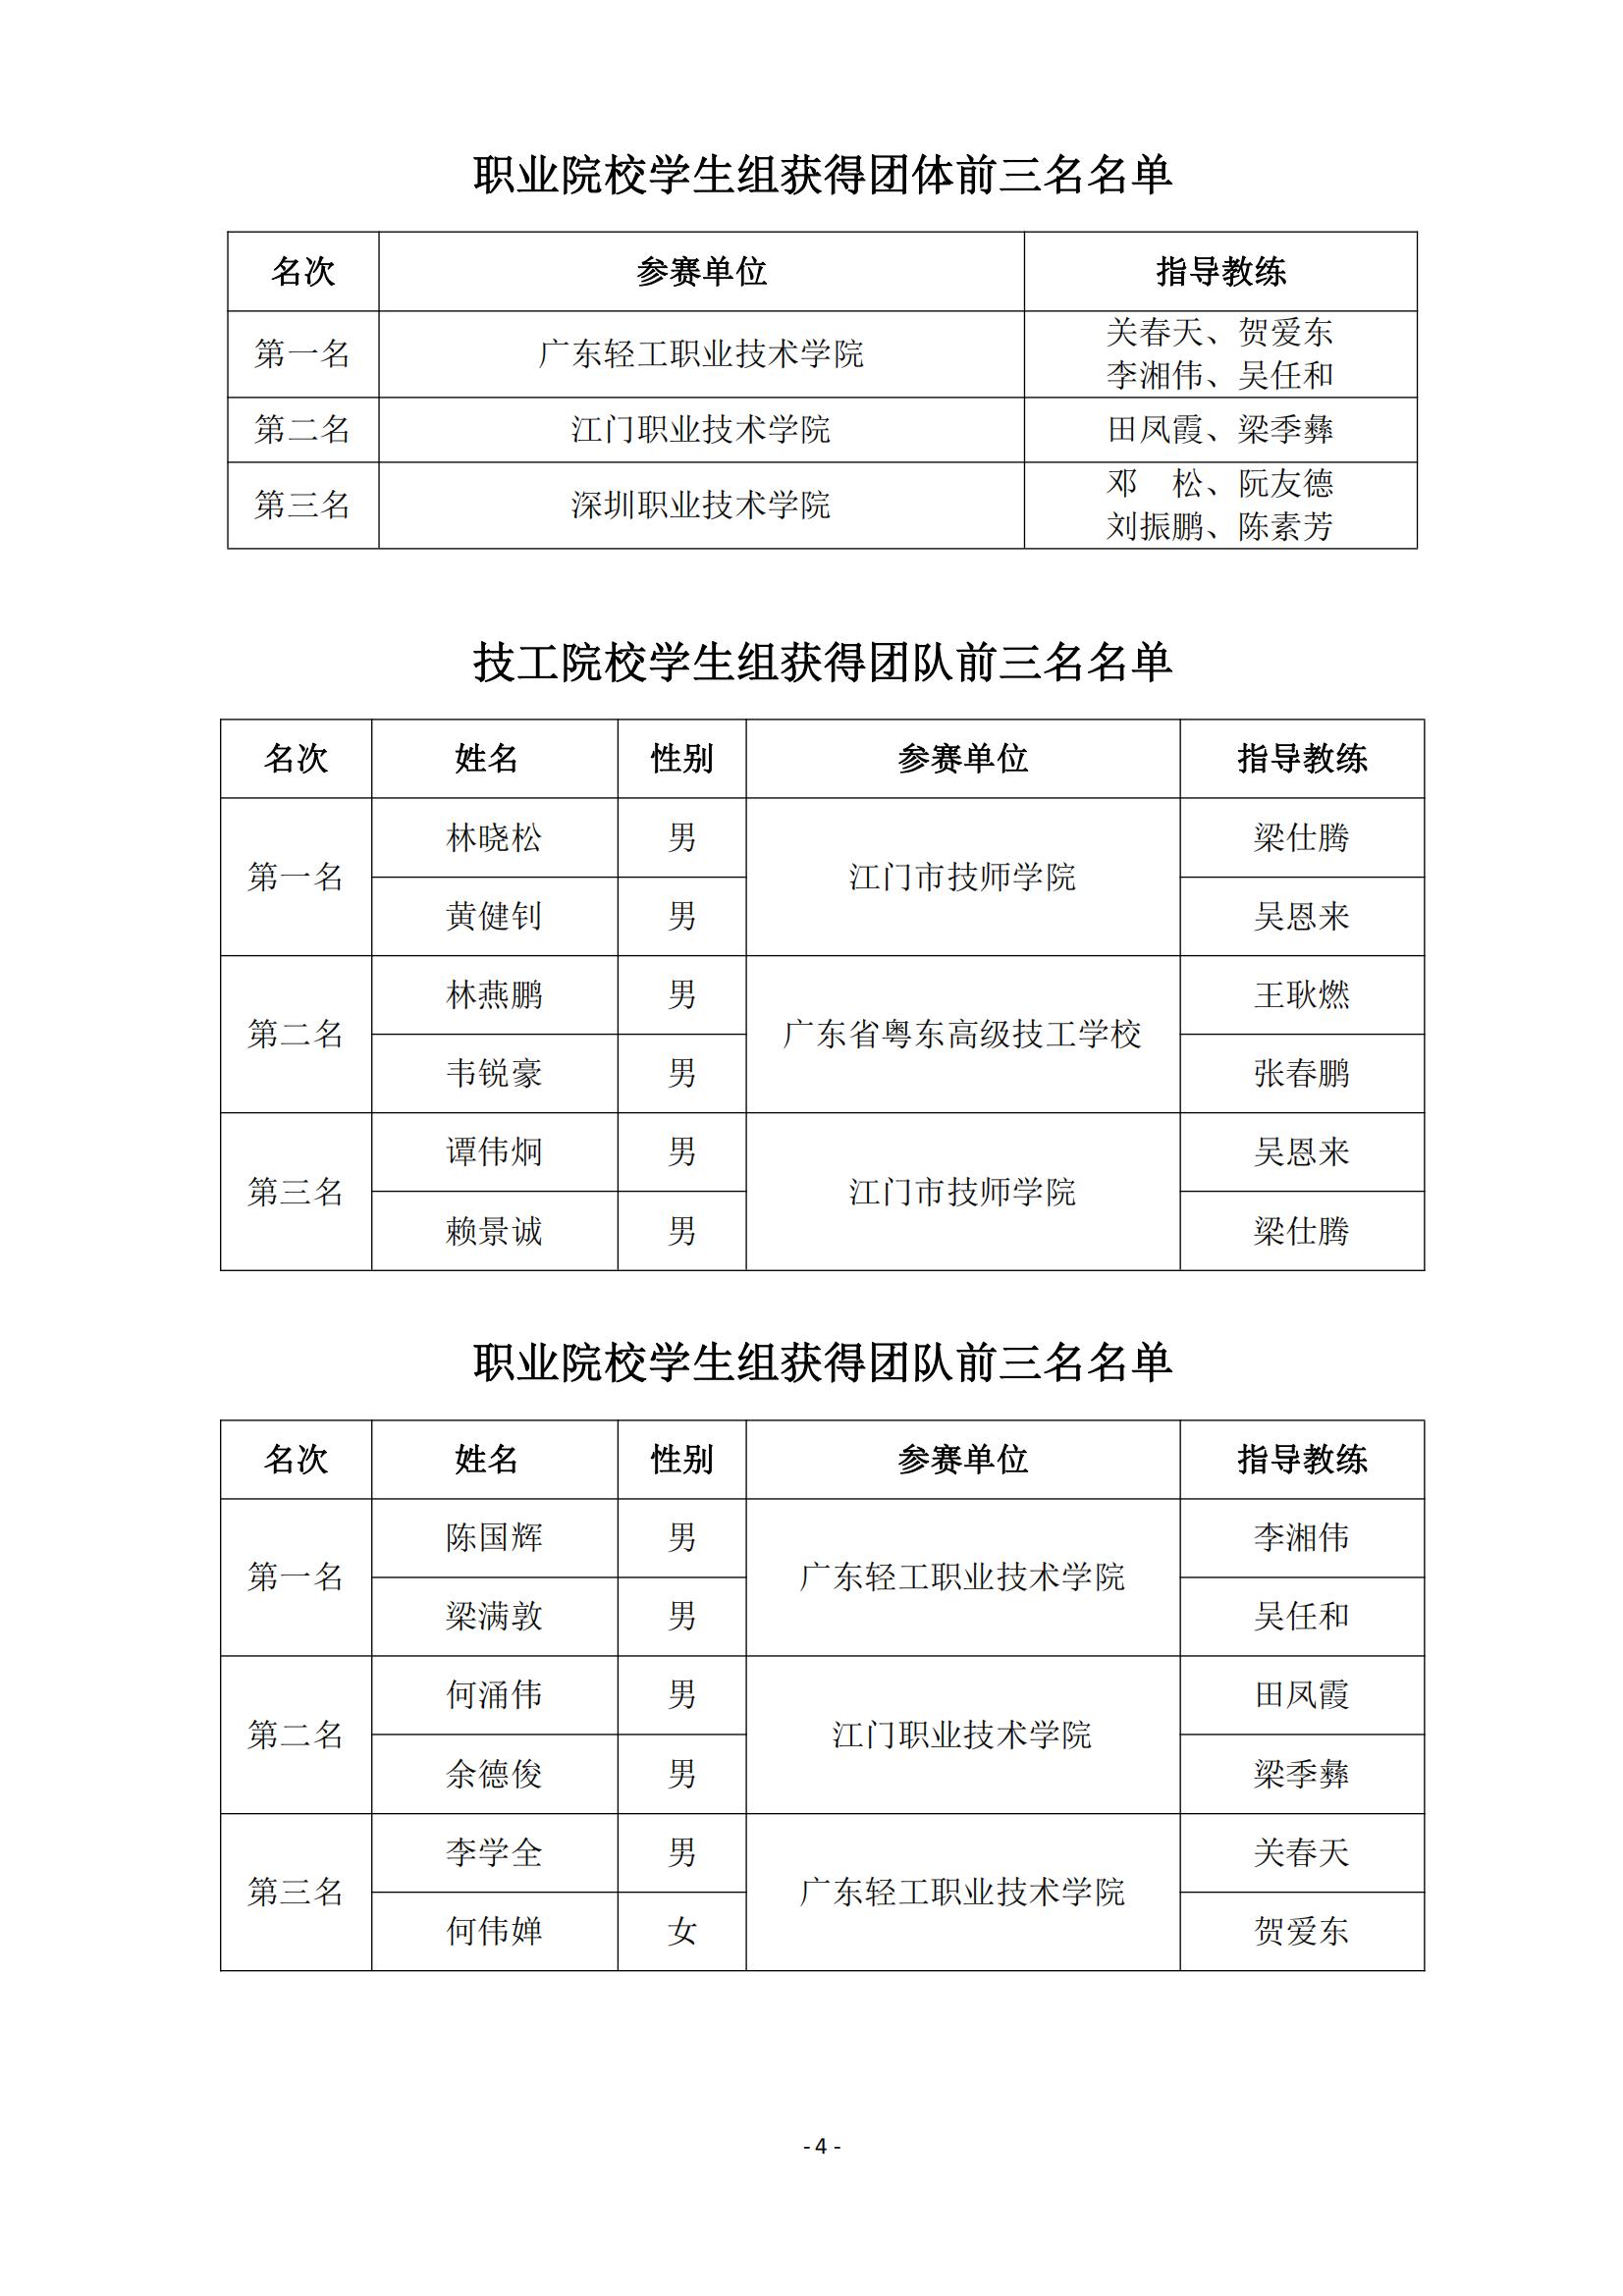 2015 年中国技能大赛--广东省机电一体化职业技能竞赛_03.jpg